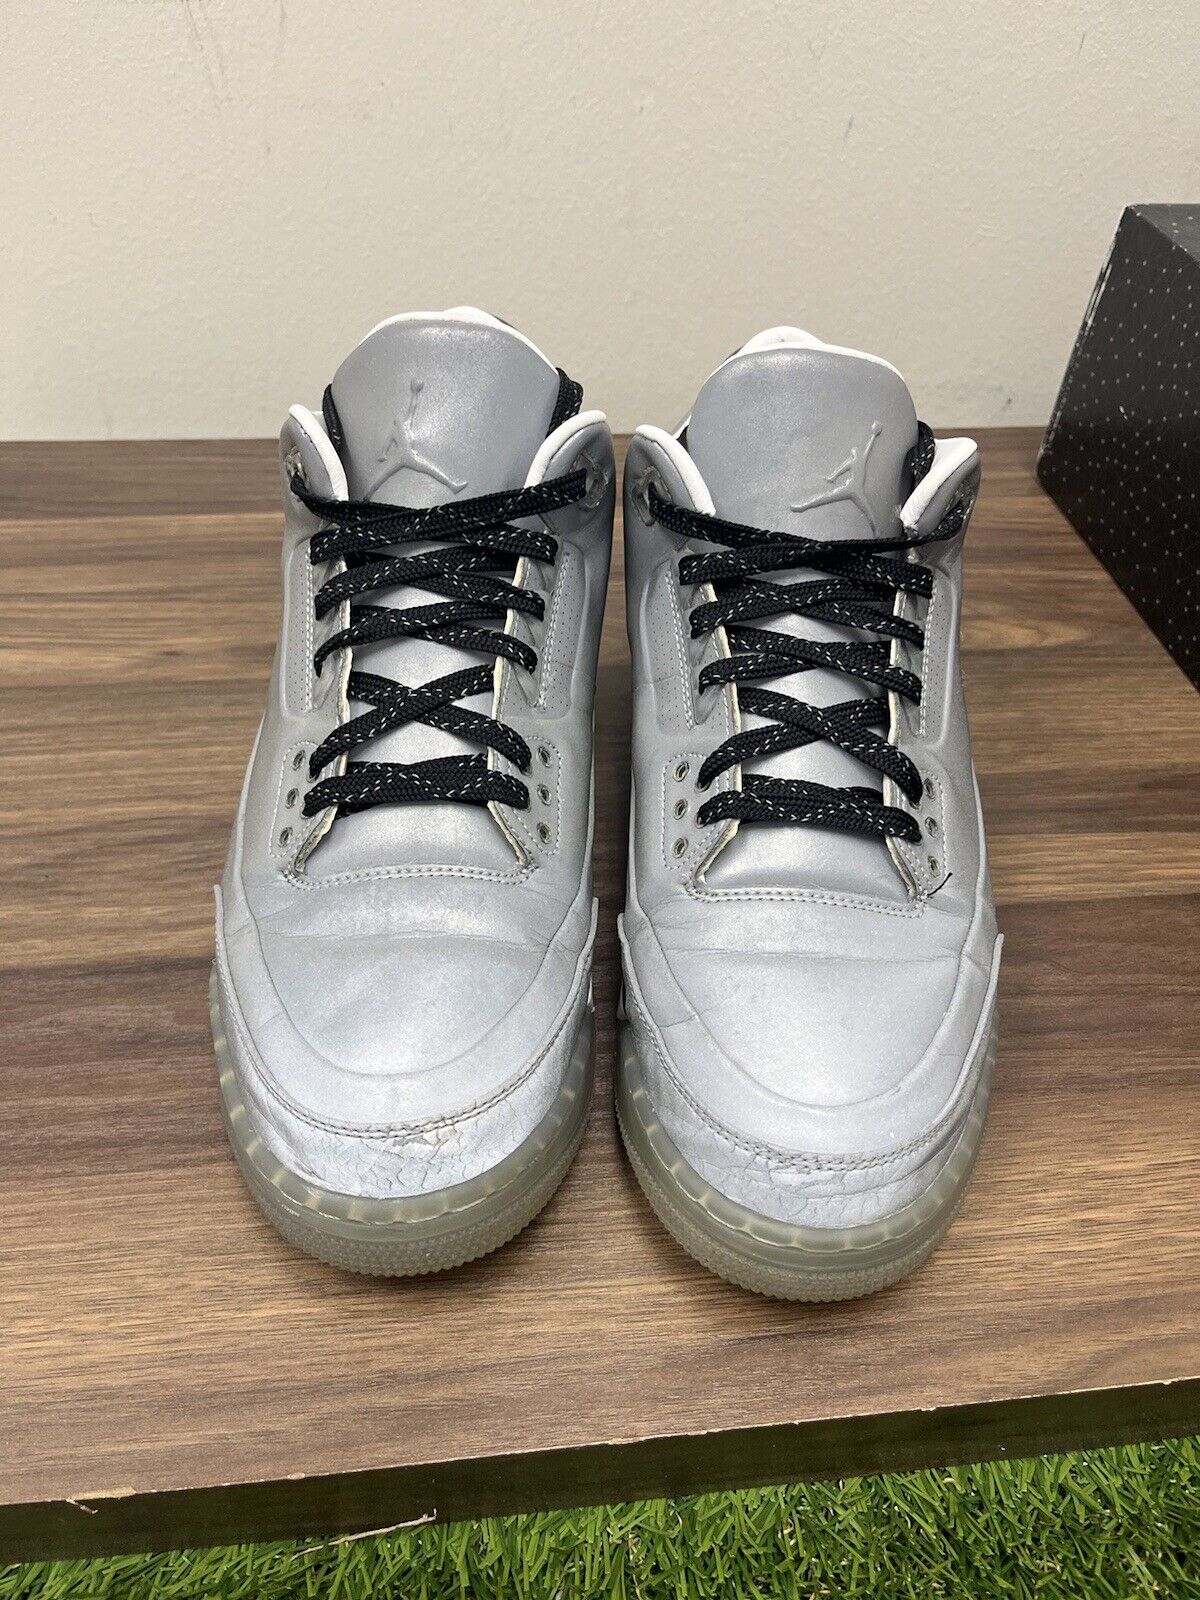 Size 10.5 - Jordan 3 5Lab3 Reflective Silver 2014